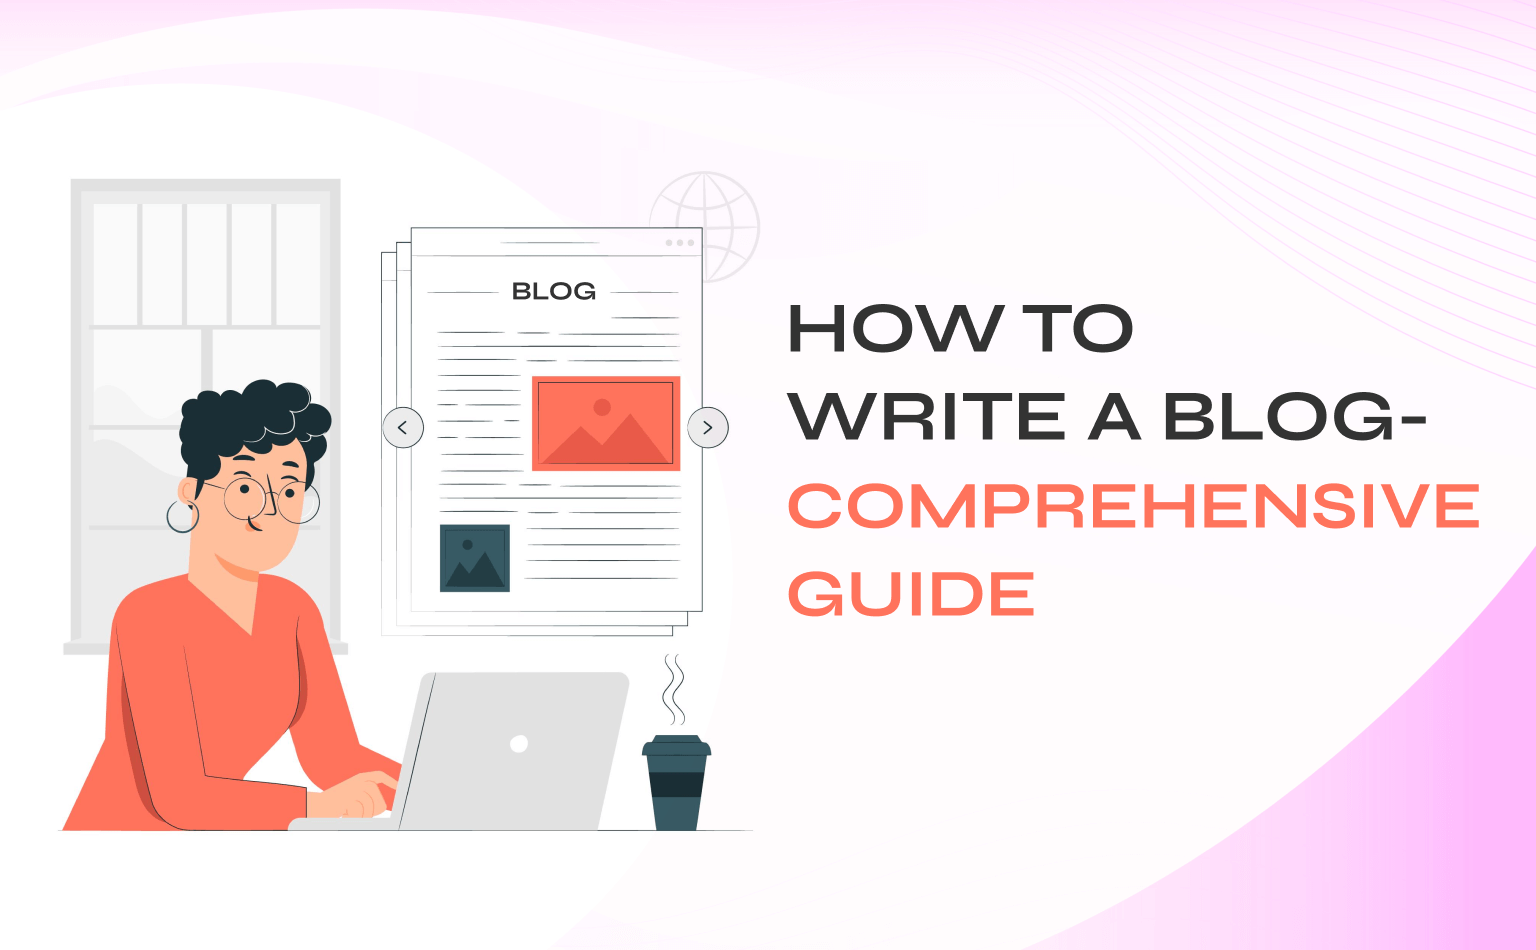 How to Write a Blog - Comprehensive Guide